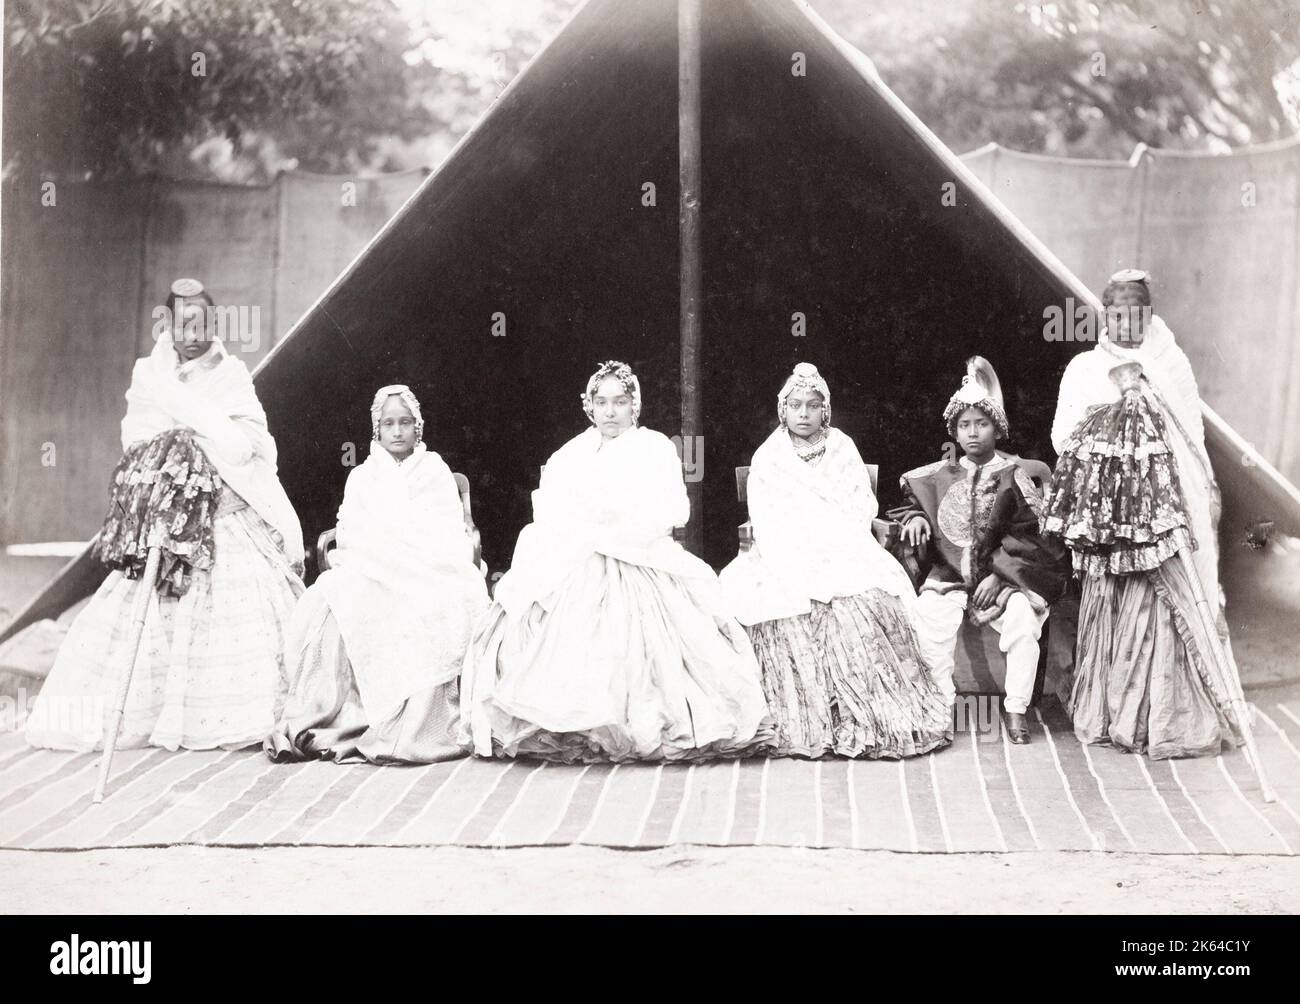 Fotografia d'epoca del XIX secolo: Gruppo di nobiltà indiana in abiti raffinati Foto Stock